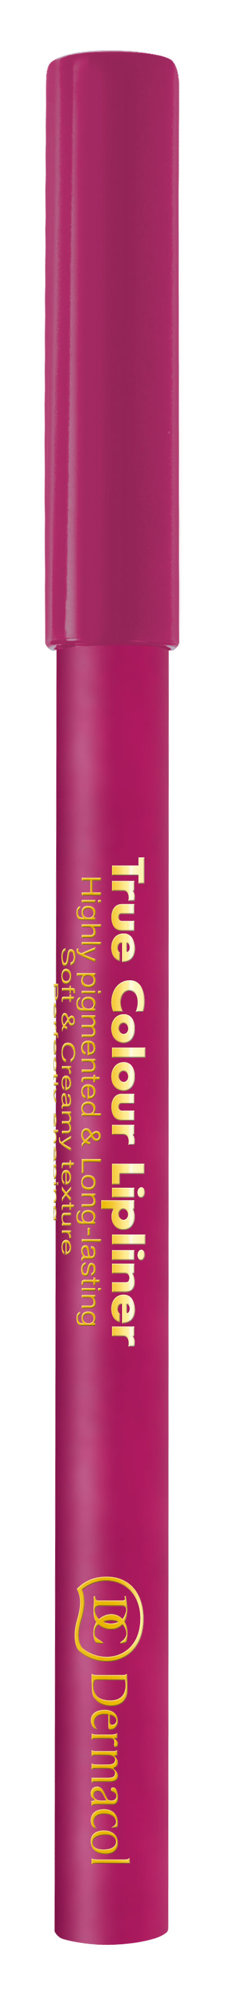 Dermacol True Colour lūpų pieštukas